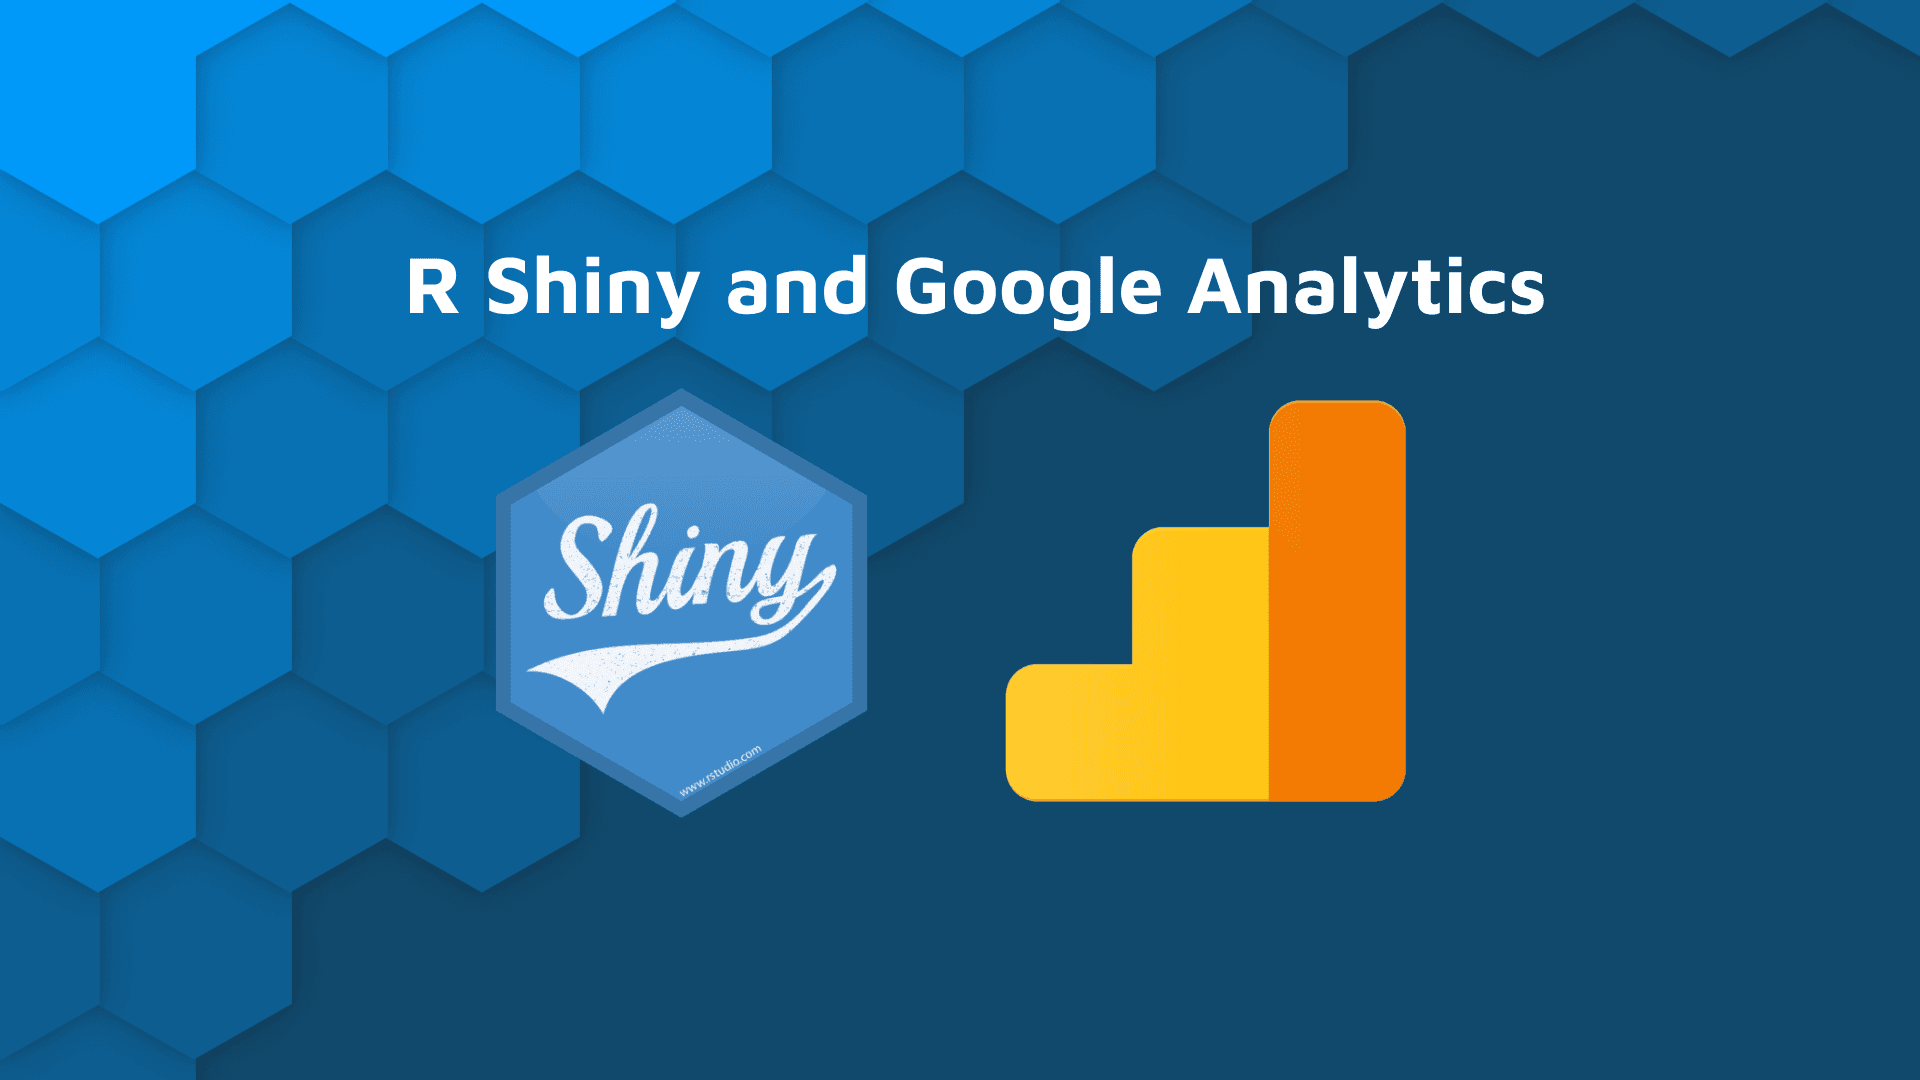 Google Analytics in R Shiny app blog hero banner with white text "R Shiny and Google Analytics" with Shiny and GA logos